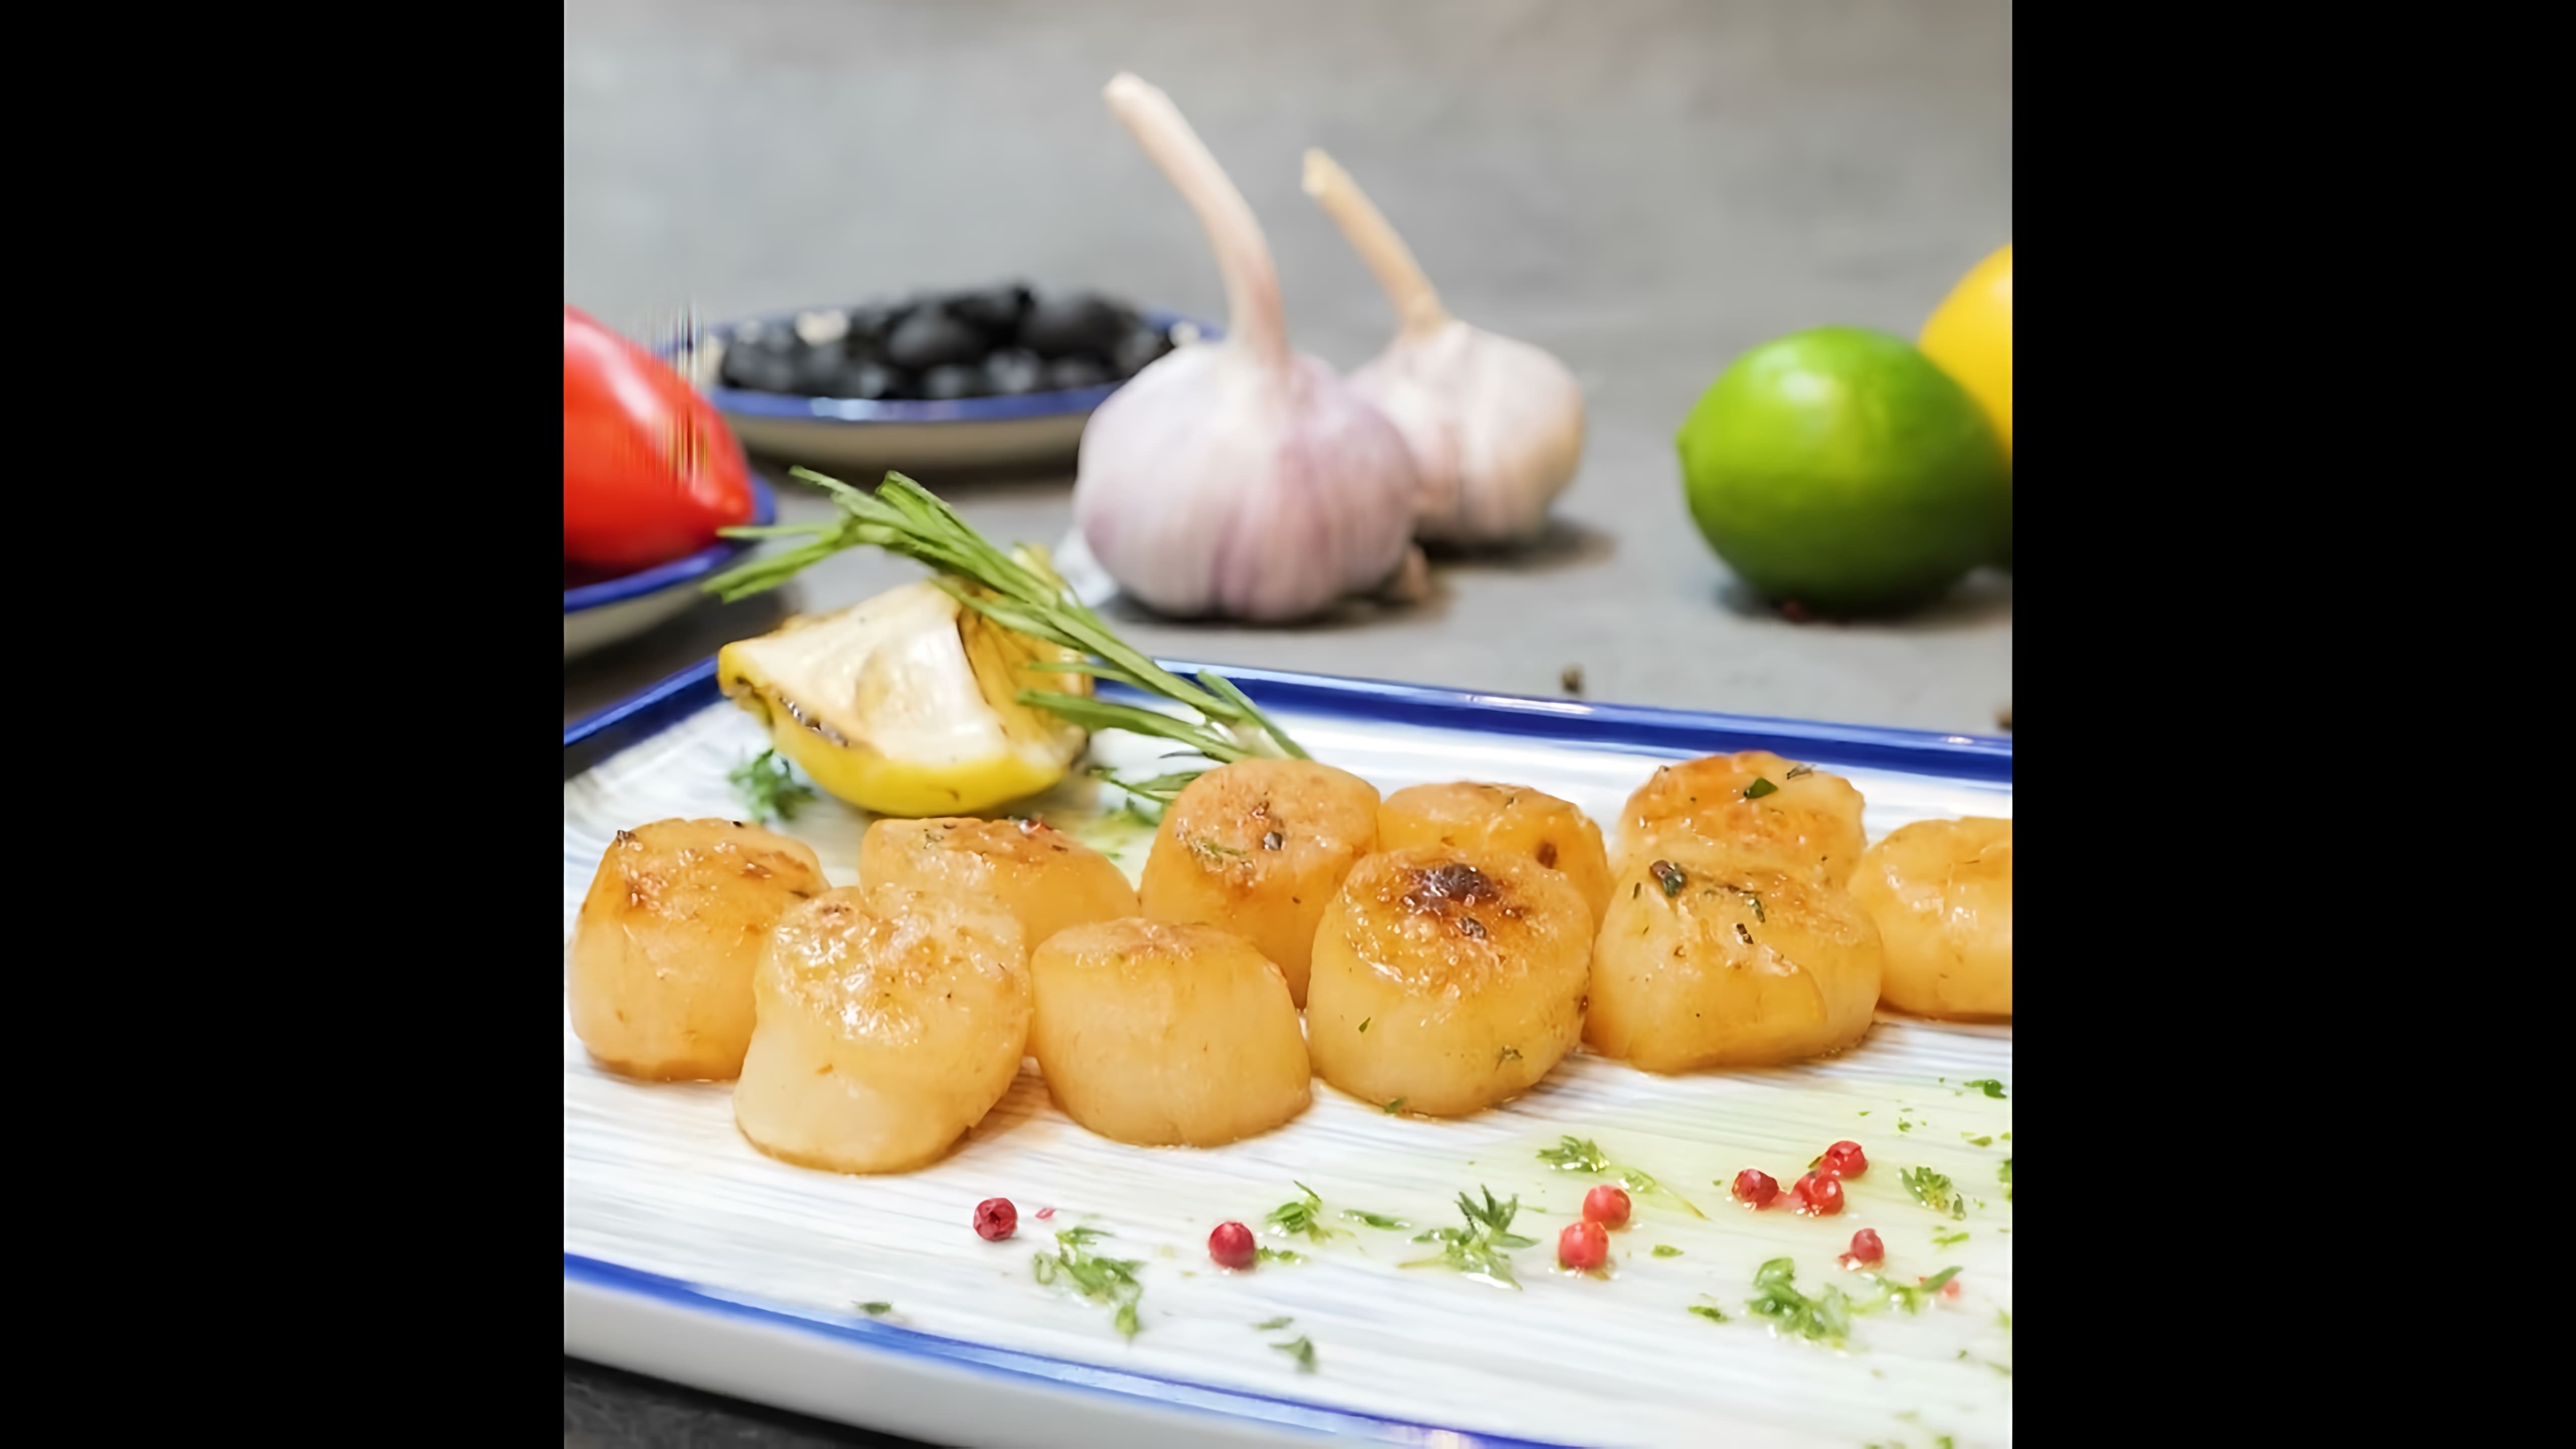 Морской гребешок на гриле - это вкусное и полезное блюдо, которое можно приготовить в домашних условиях